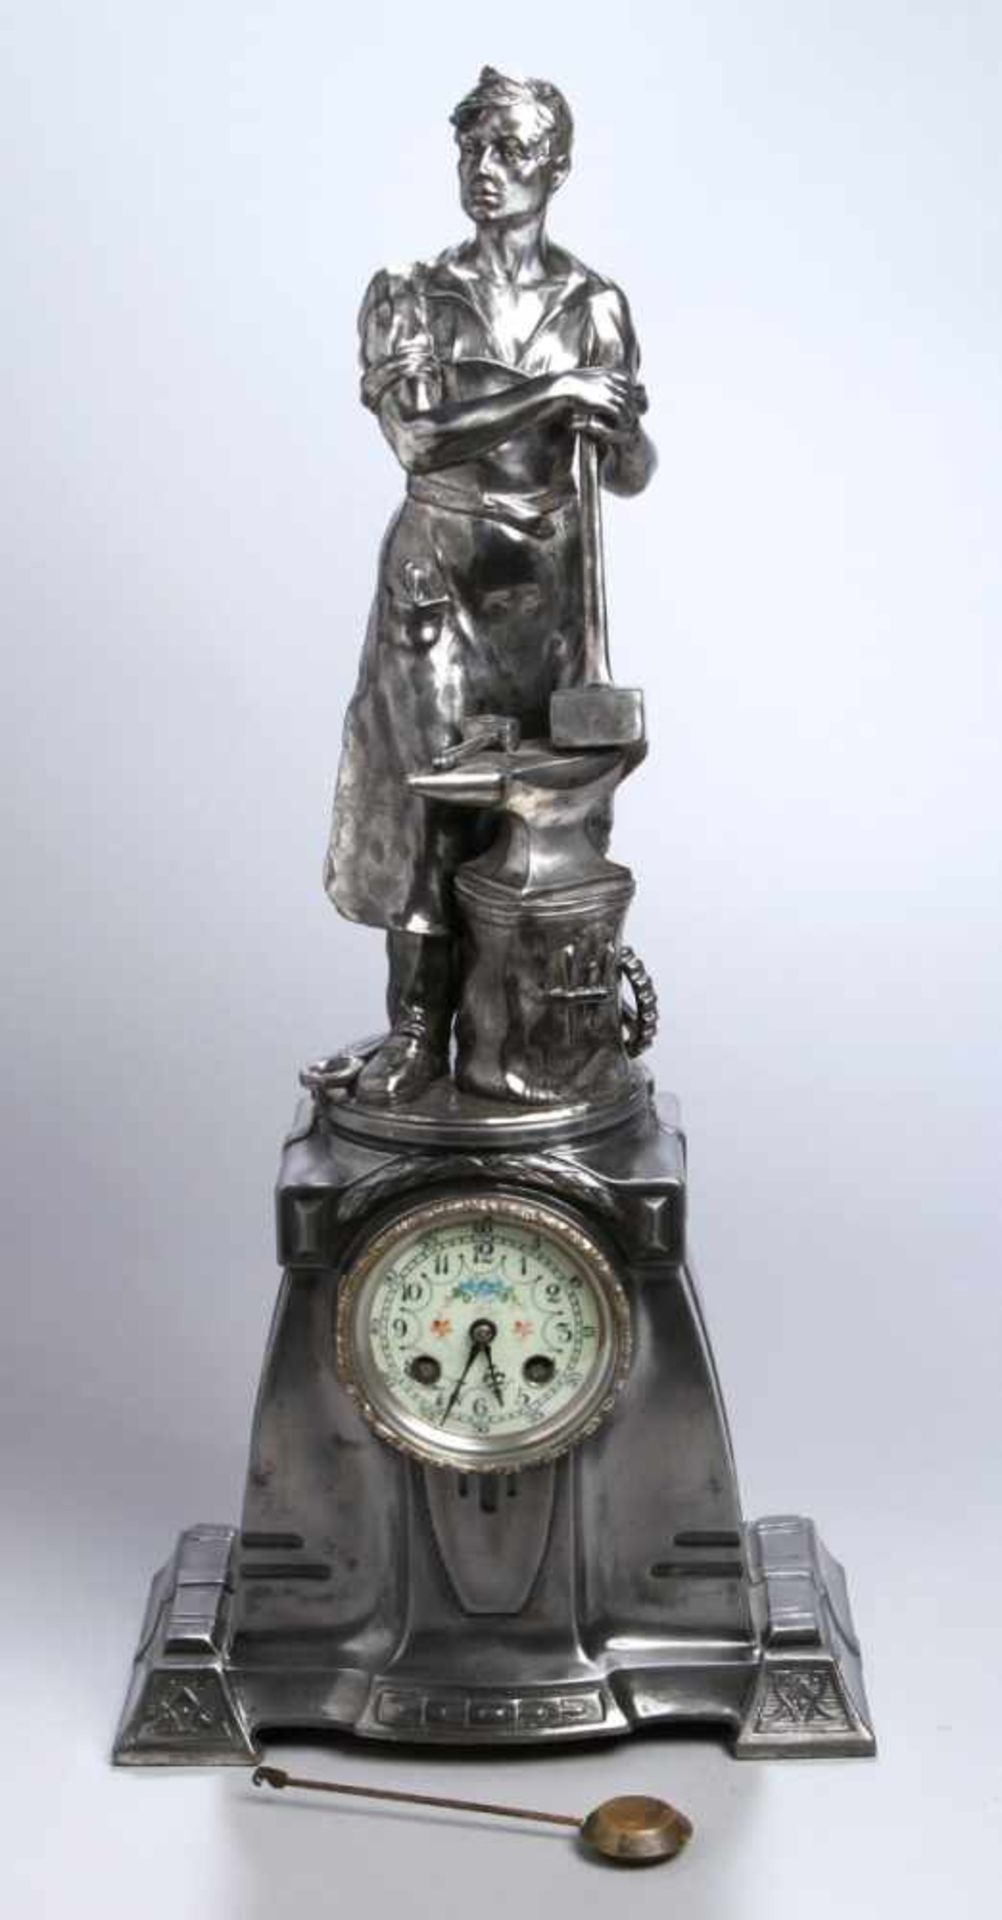 Britanniametall-Skulpturenuhr, WMF, um 1900-10, Ankerwerk, 1/2-Std.-Schlagwerk auf Glocke,